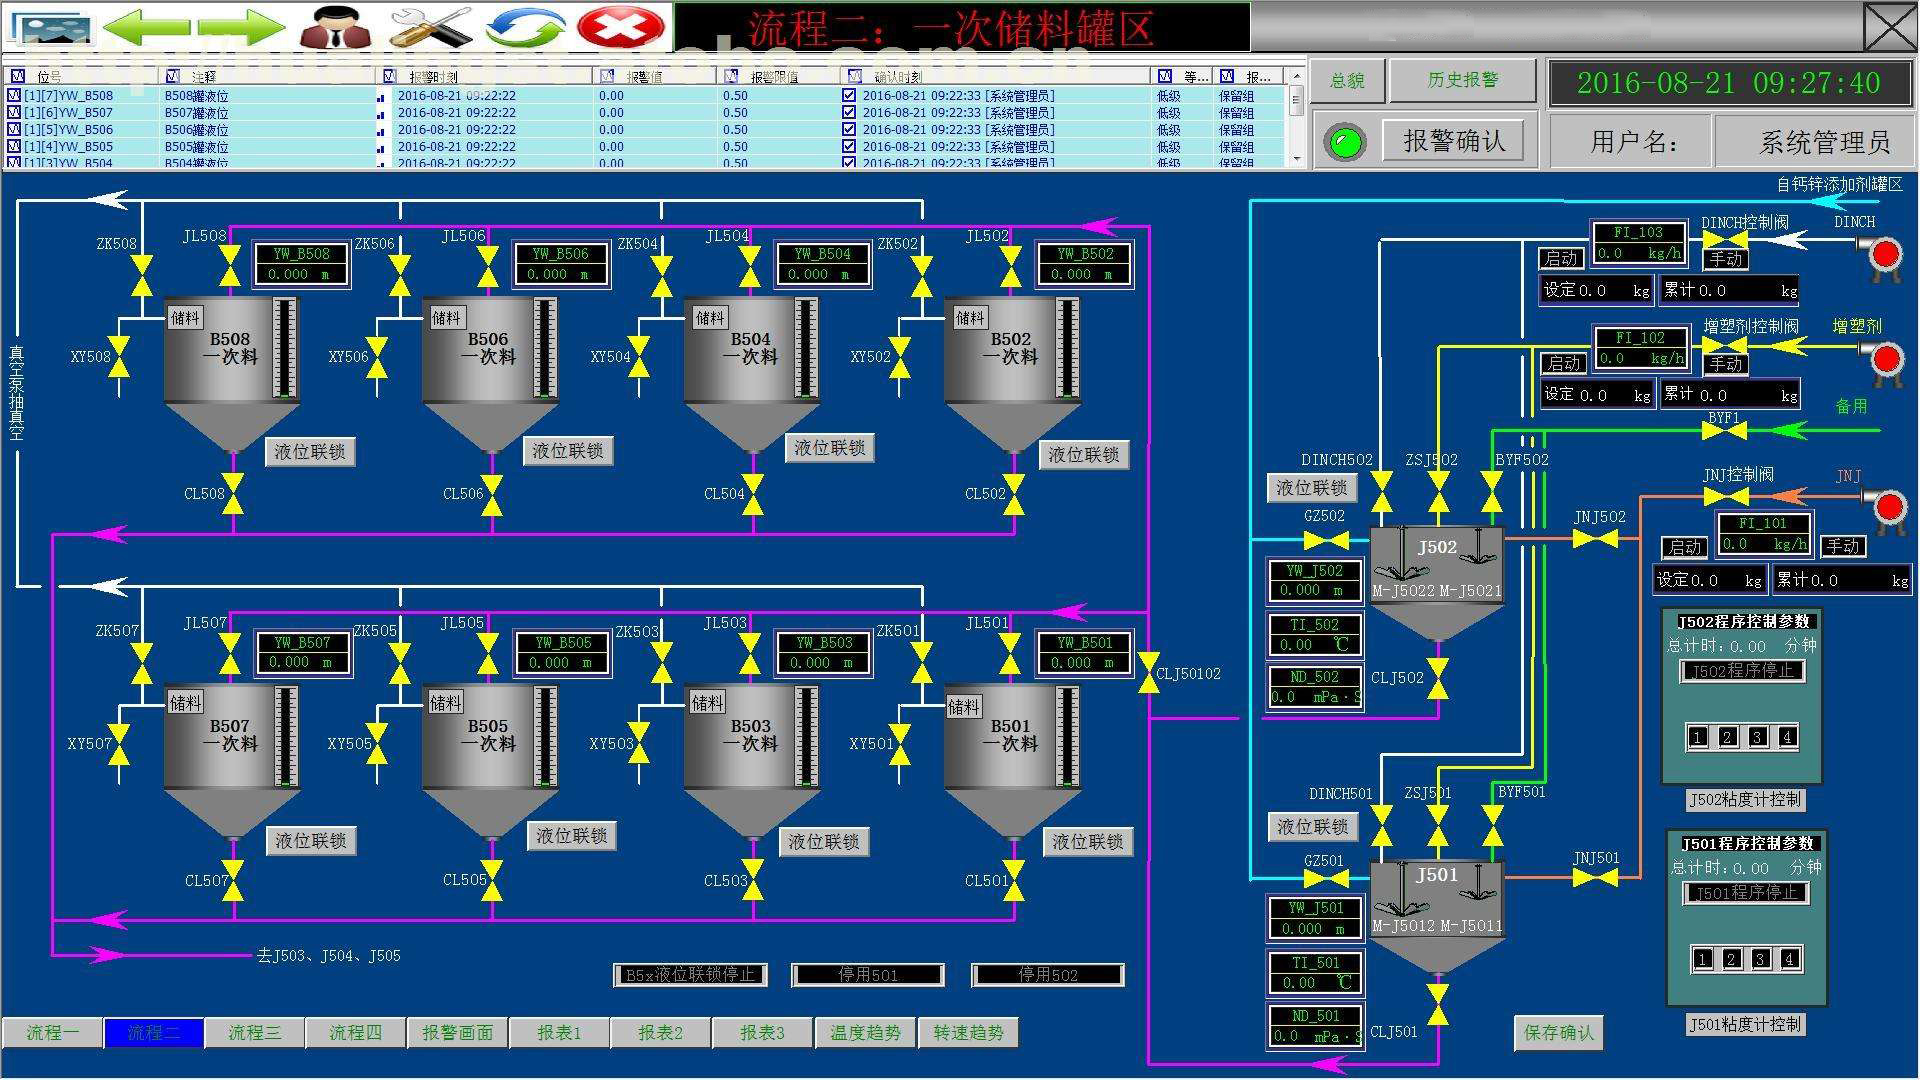 配料控制系统图-配料系统工程-产品展示-中科科正自动化工程有限公司